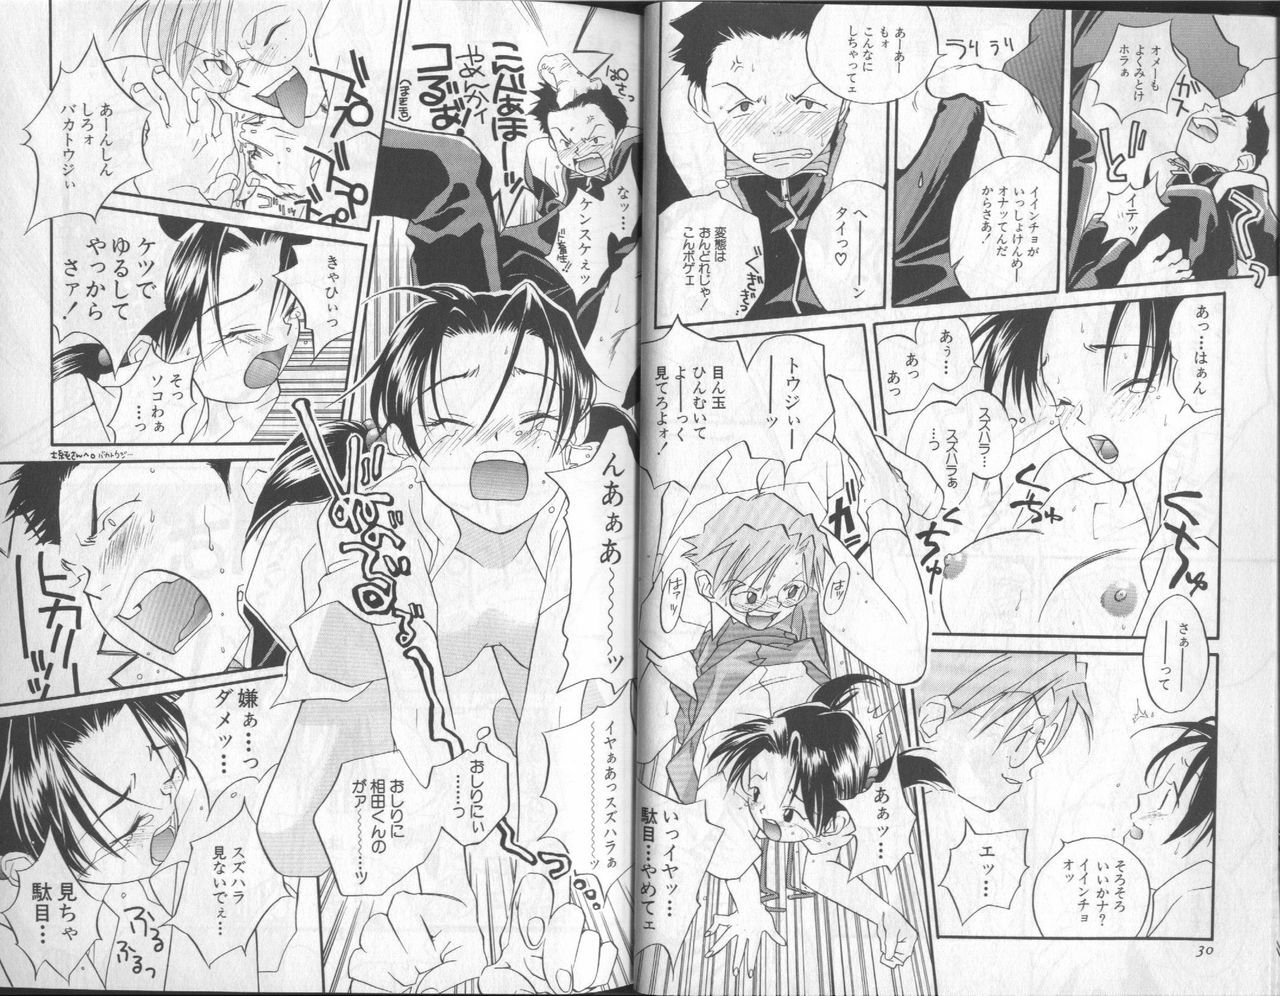 [Anthology] Shitsurakuen 6 | Paradise Lost 6 (Neon Genesis Evangelion) page 17 full